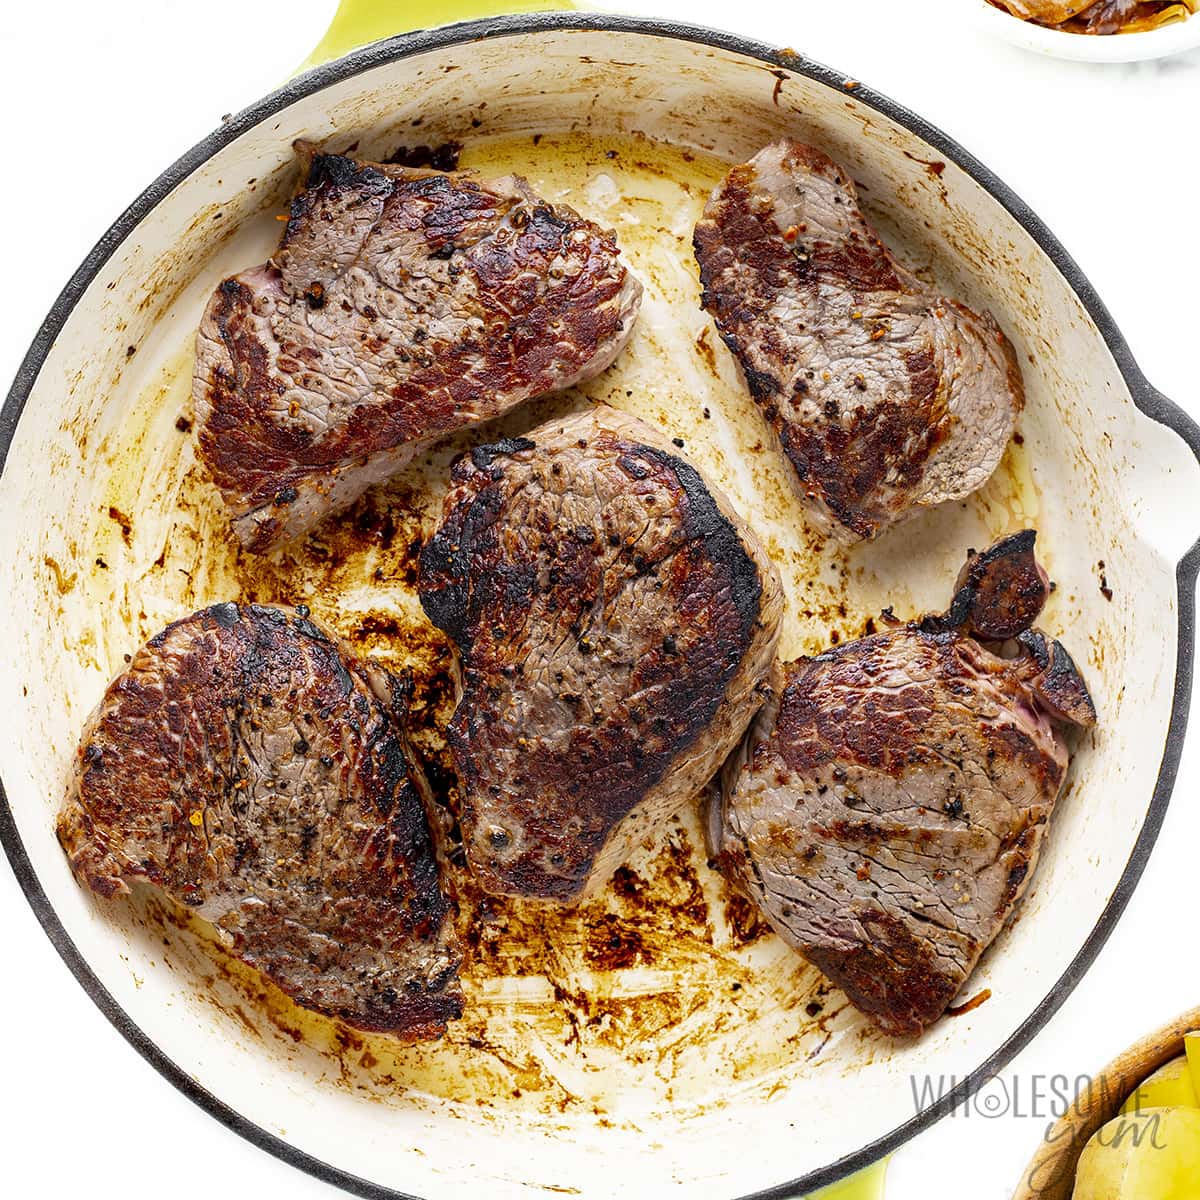 Steaks seared in pan.